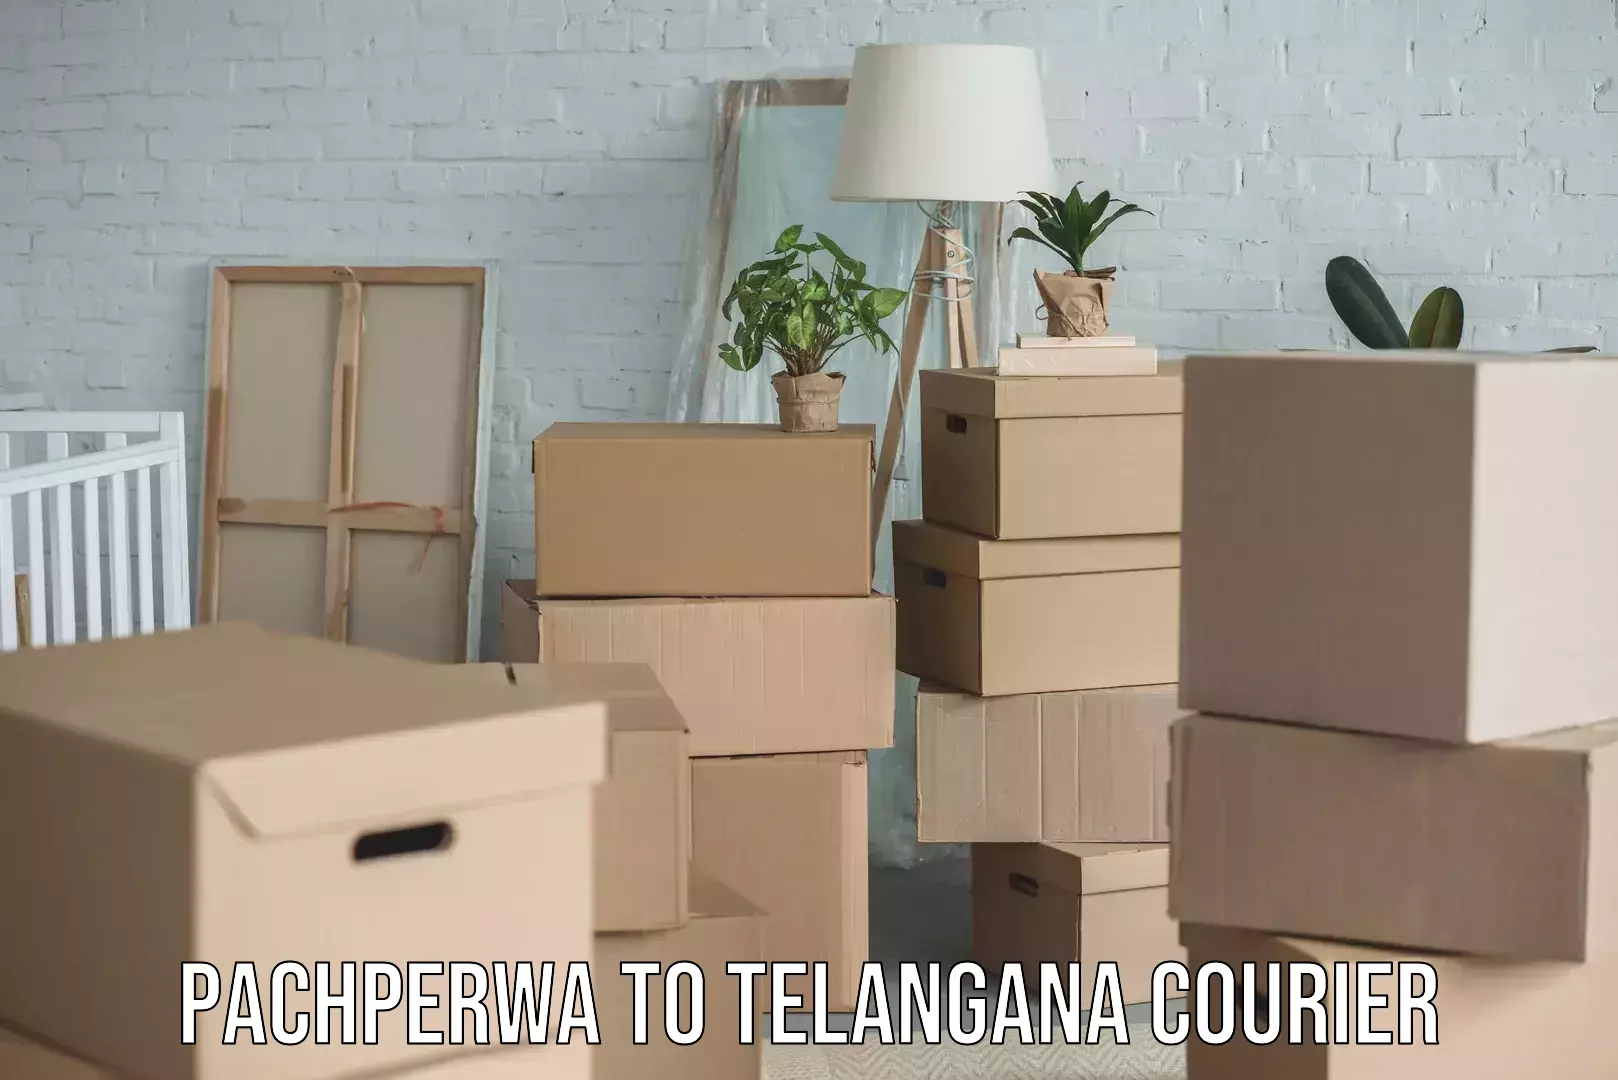 Home shifting experts Pachperwa to Telangana